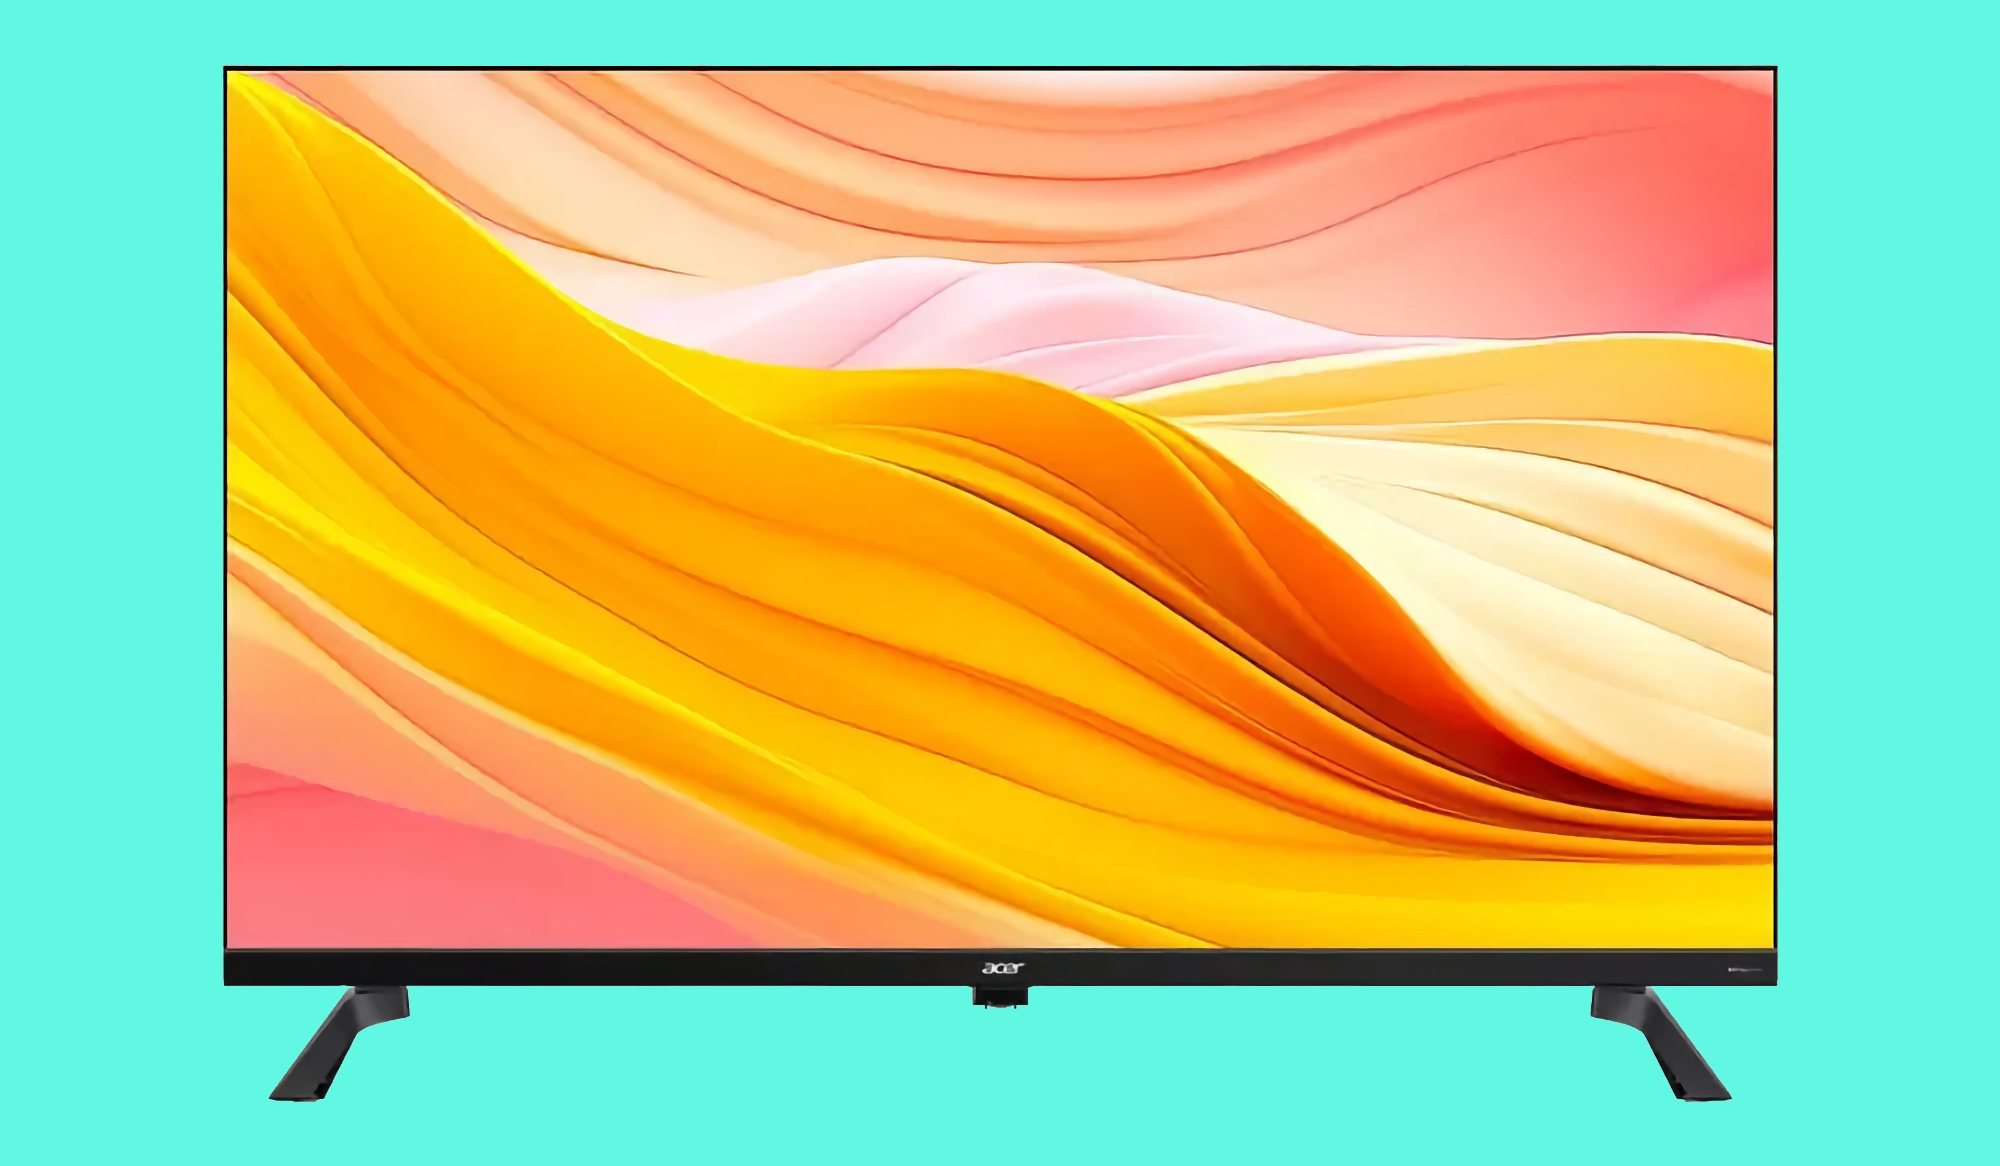 Acer G Series TV: gama inteligentnych telewizorów z ekranami do 55 cali, głośnikami 24 W i Google TV na pokładzie